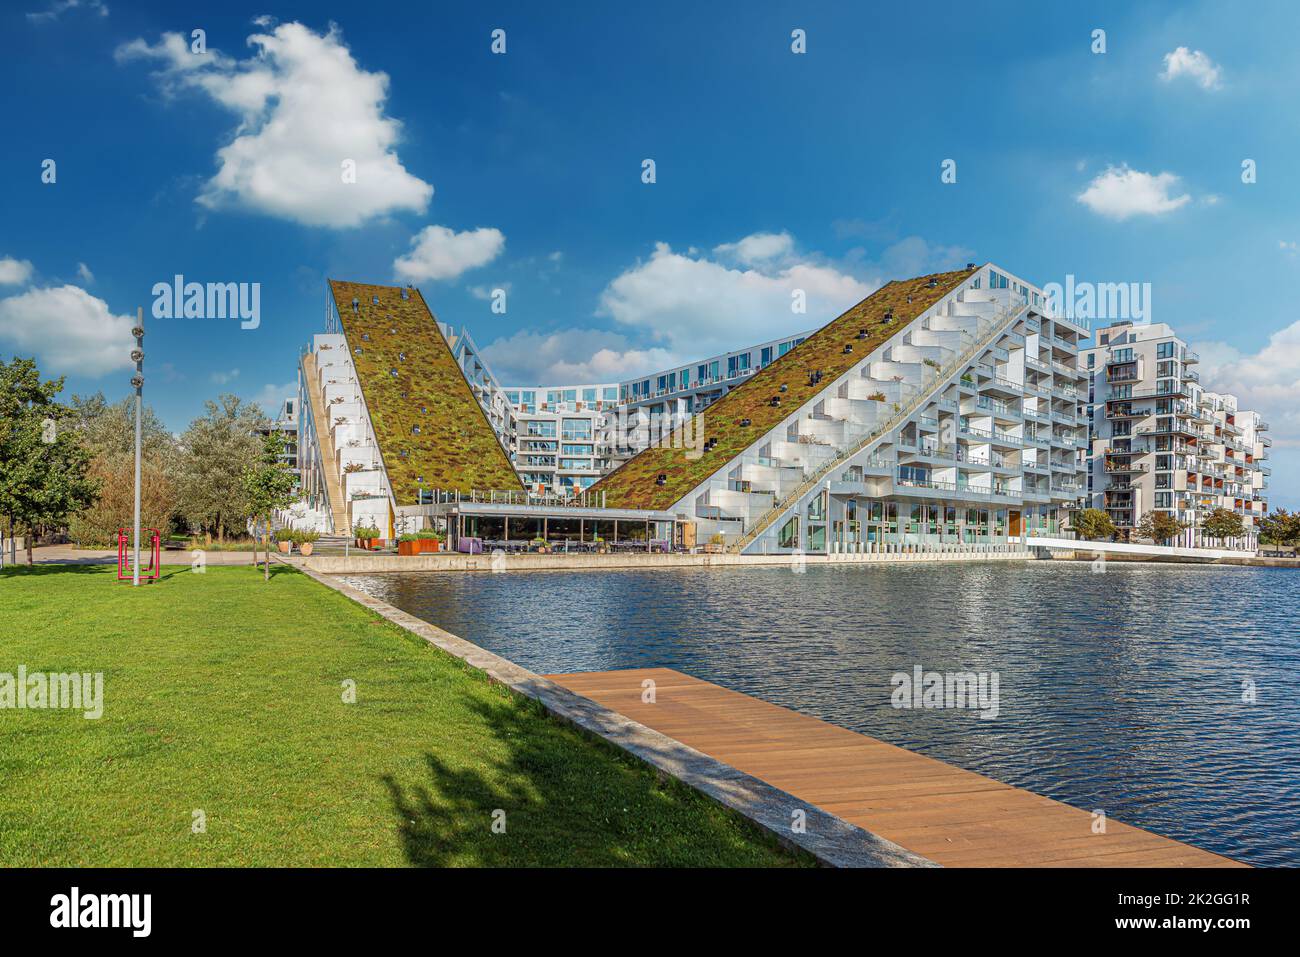 8 Pallet , auch bekannt als Big House, ist eine große Mixed-Use-Entwicklung, die in Form einer Figur 8 gebaut wurde. Kopenhagen, Dänemark Stockfoto